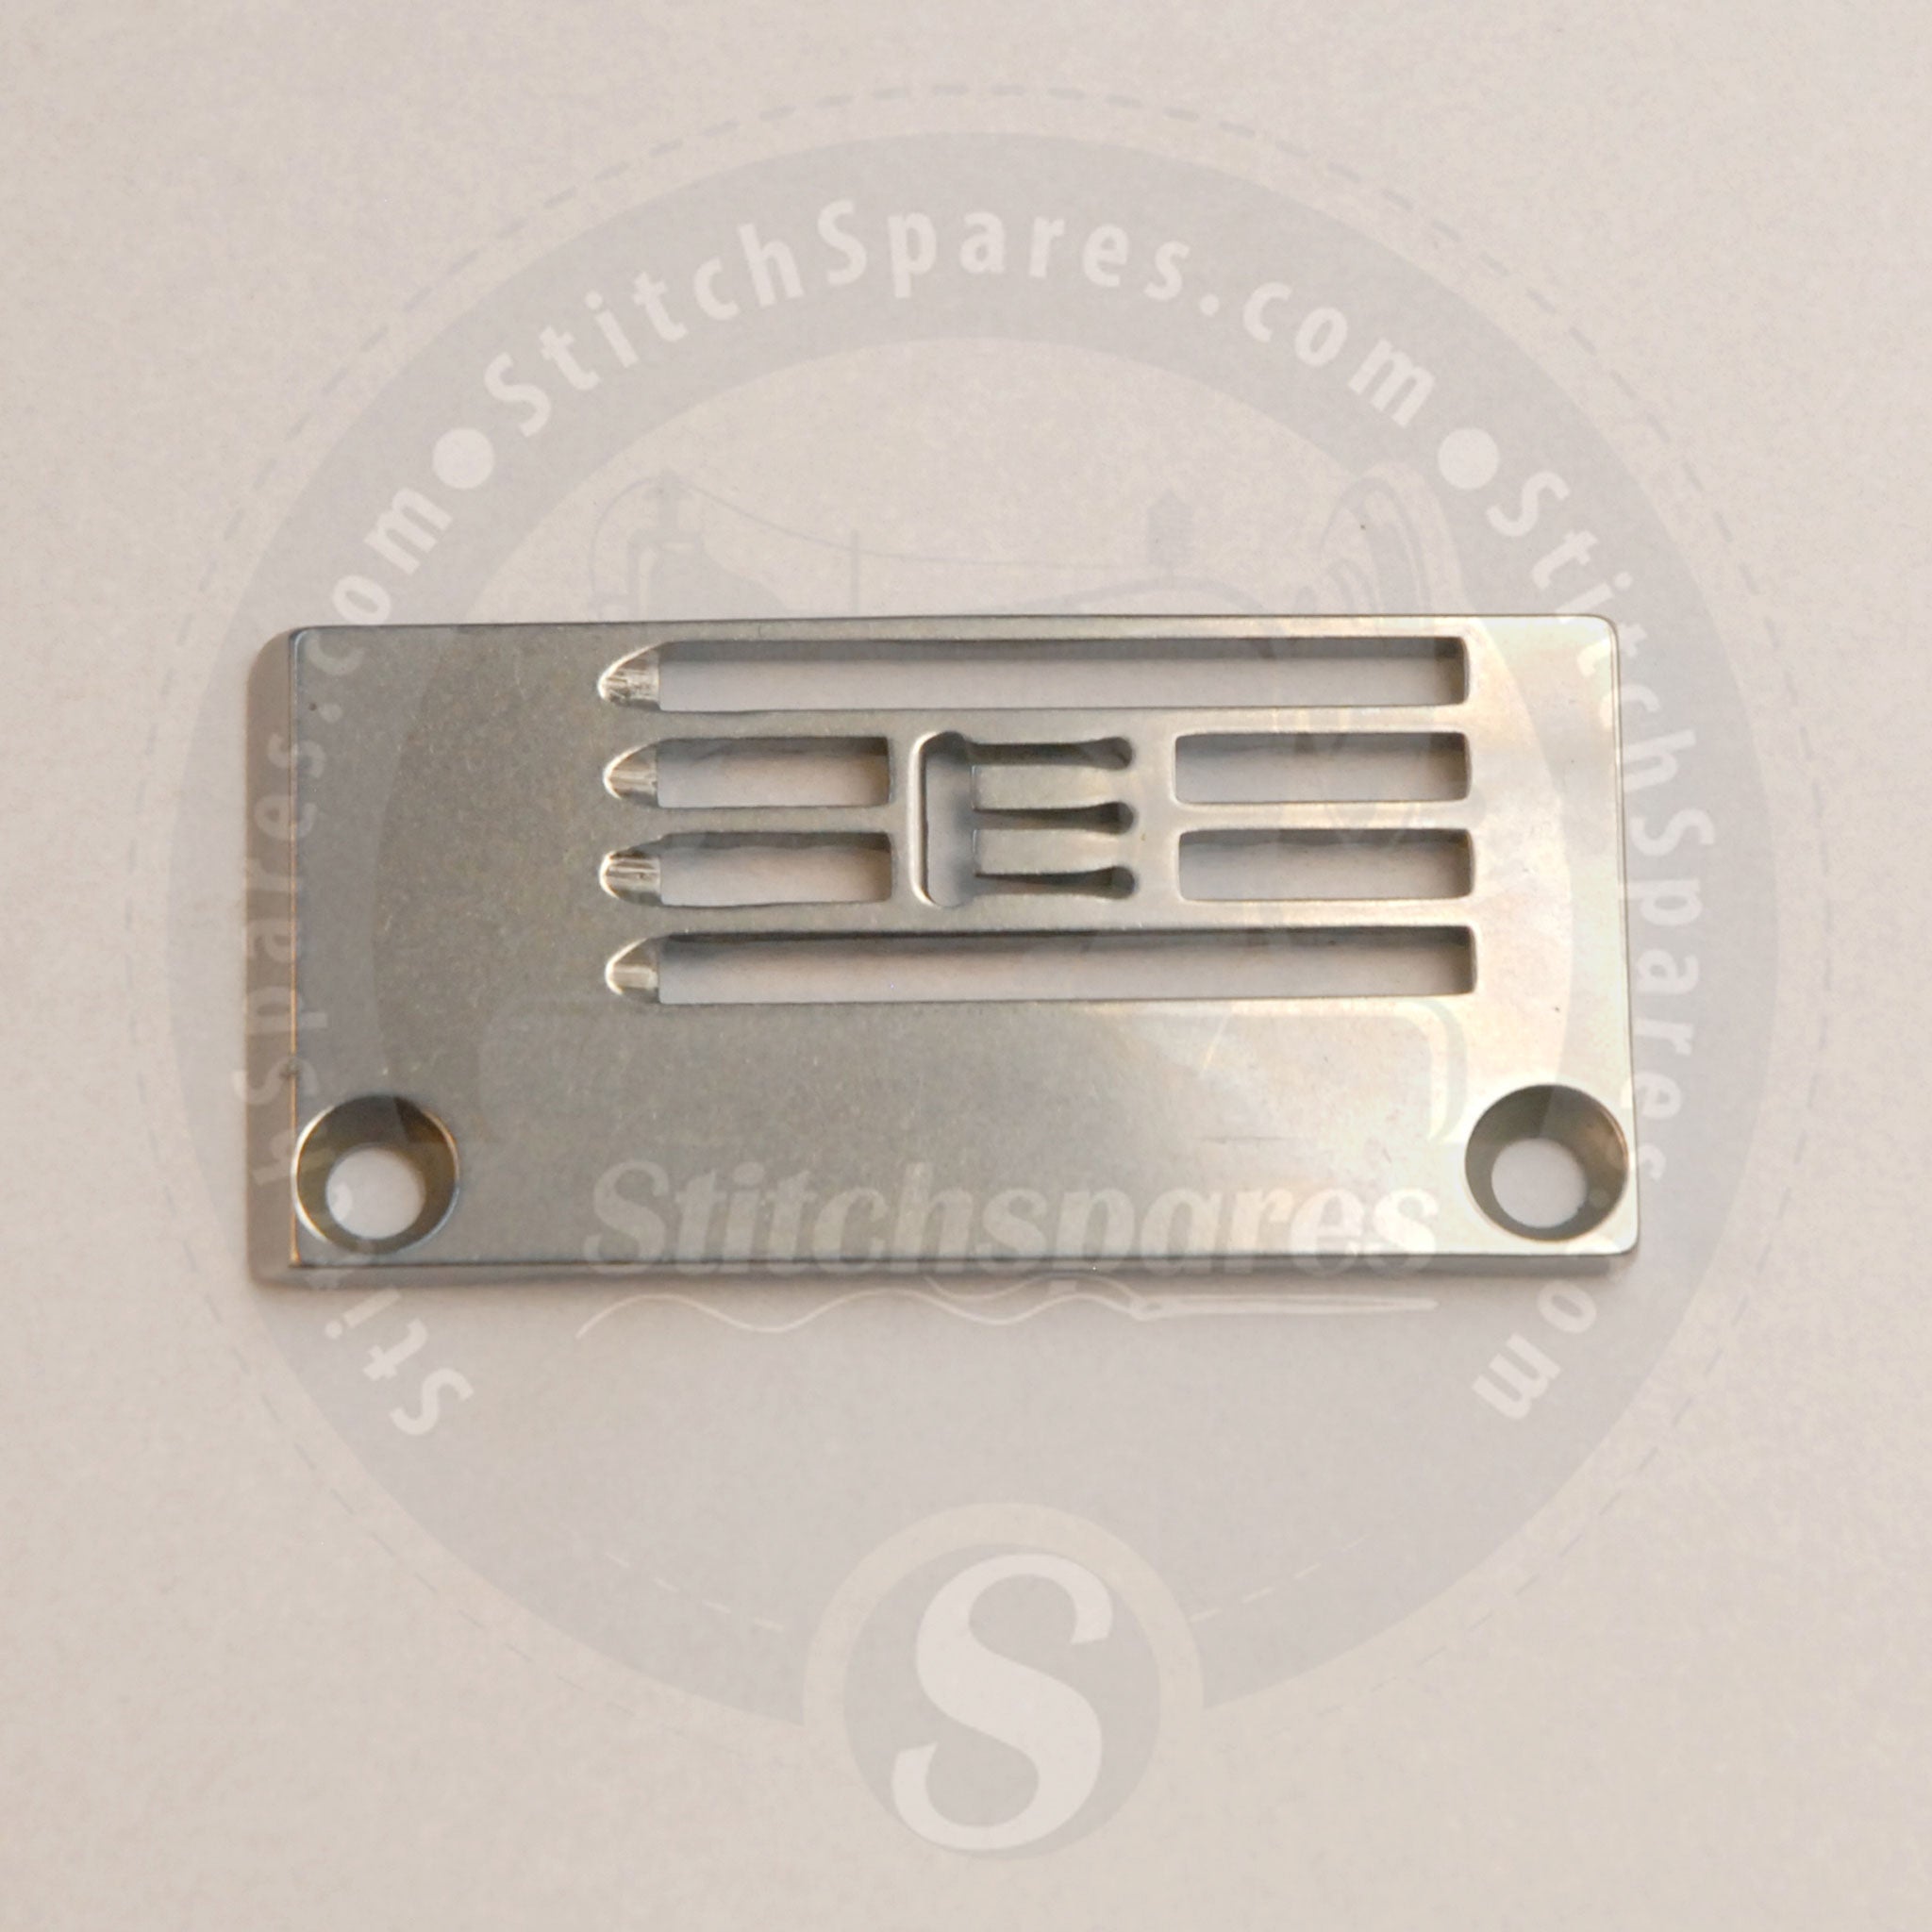 14-854 Placa de aguja para Kansai Special Flatlock (Interbloqueo) DVK1703D V7003D DWK1803D W8003D Máquina de coser industrial